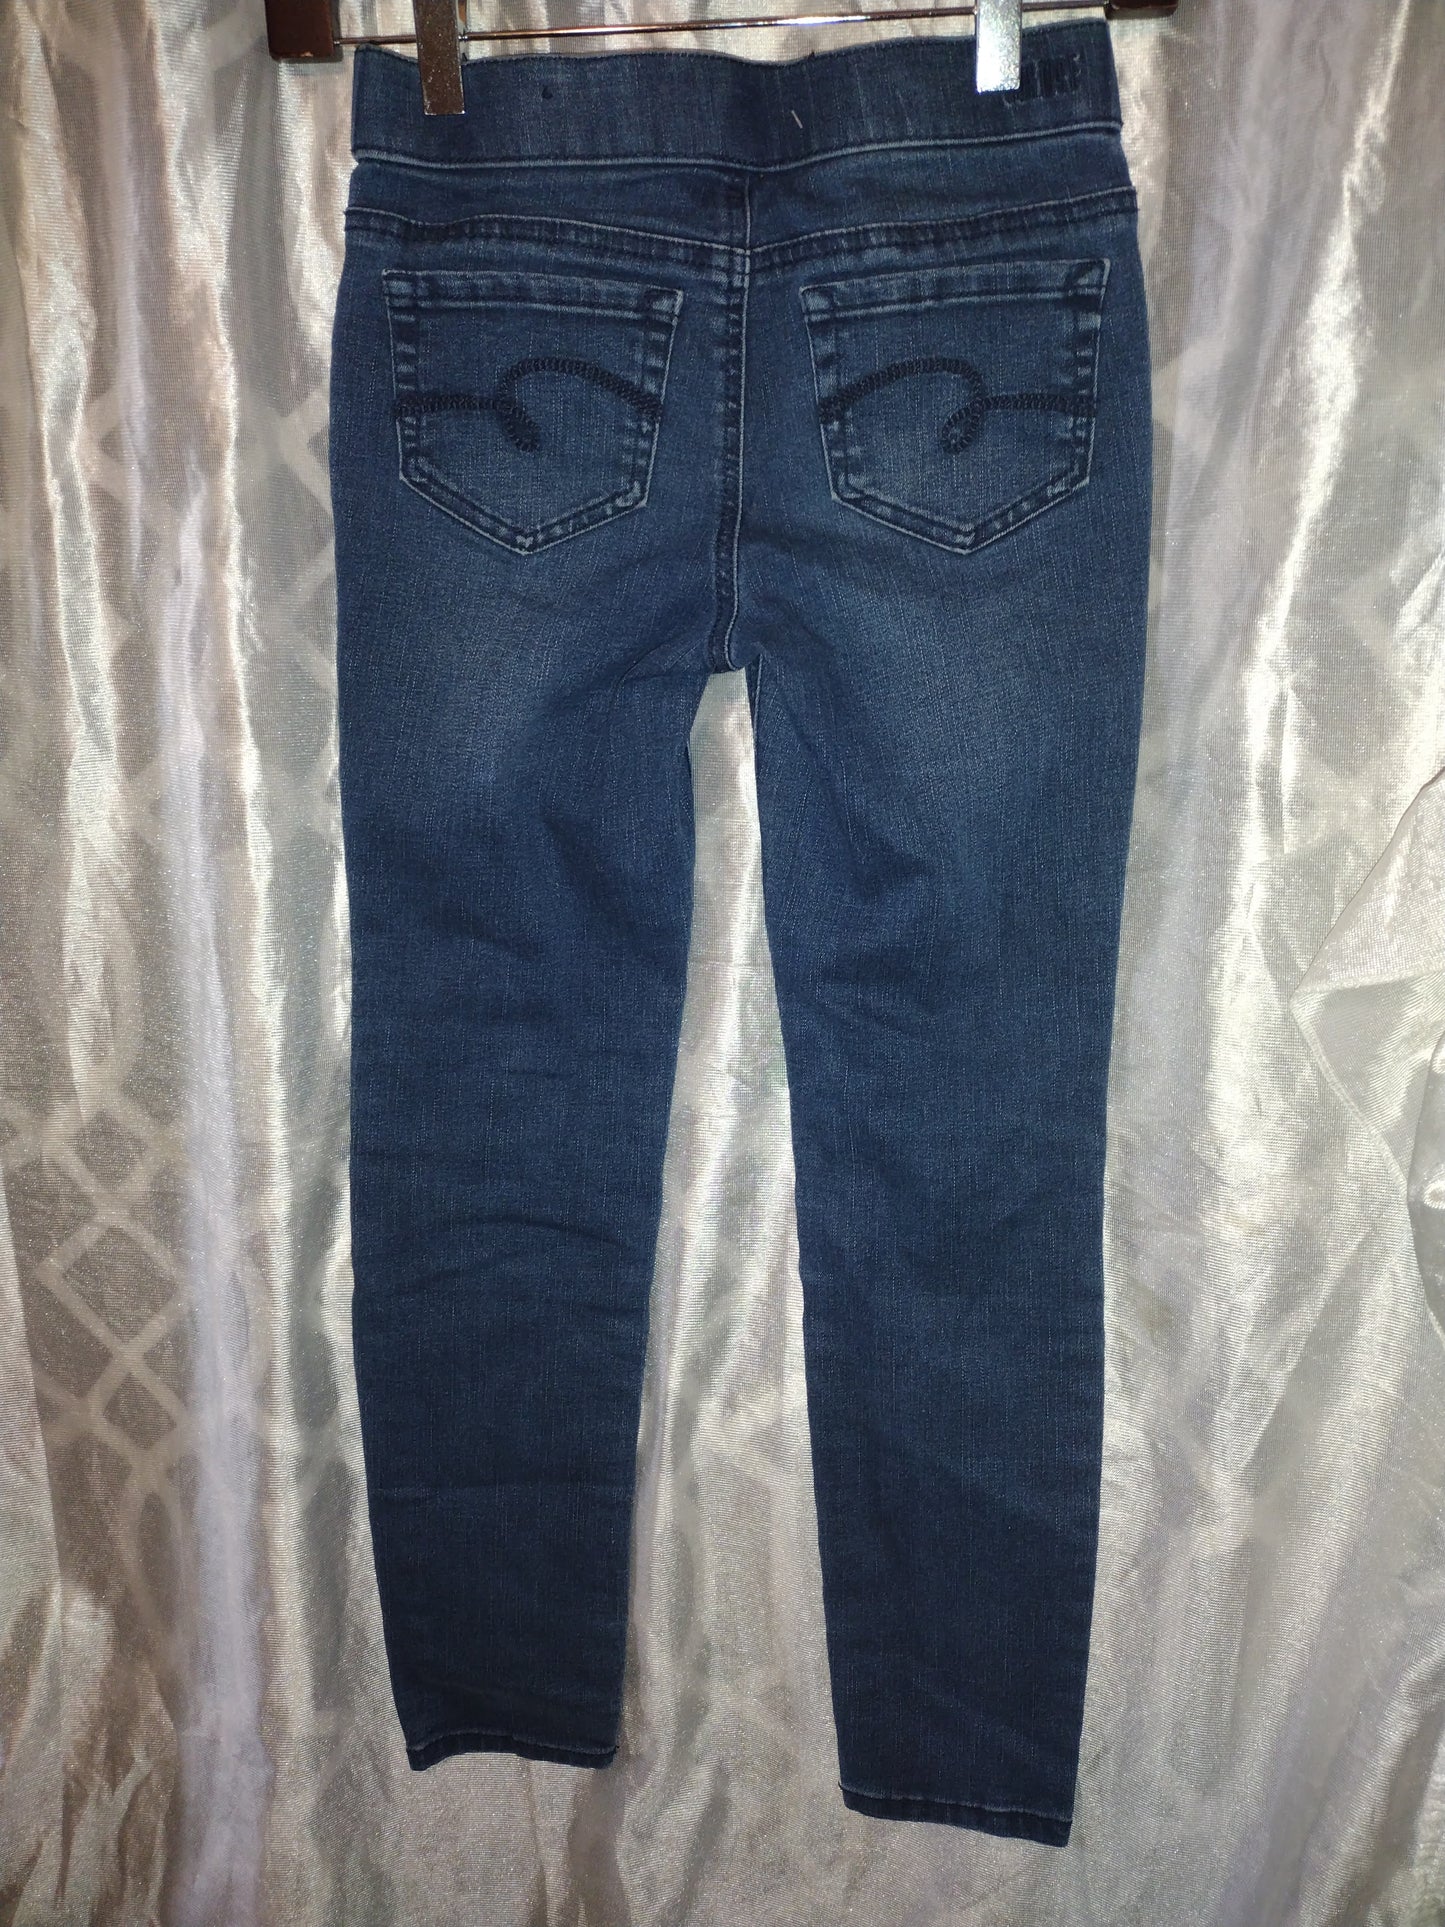 Girl leggings jeans size 10